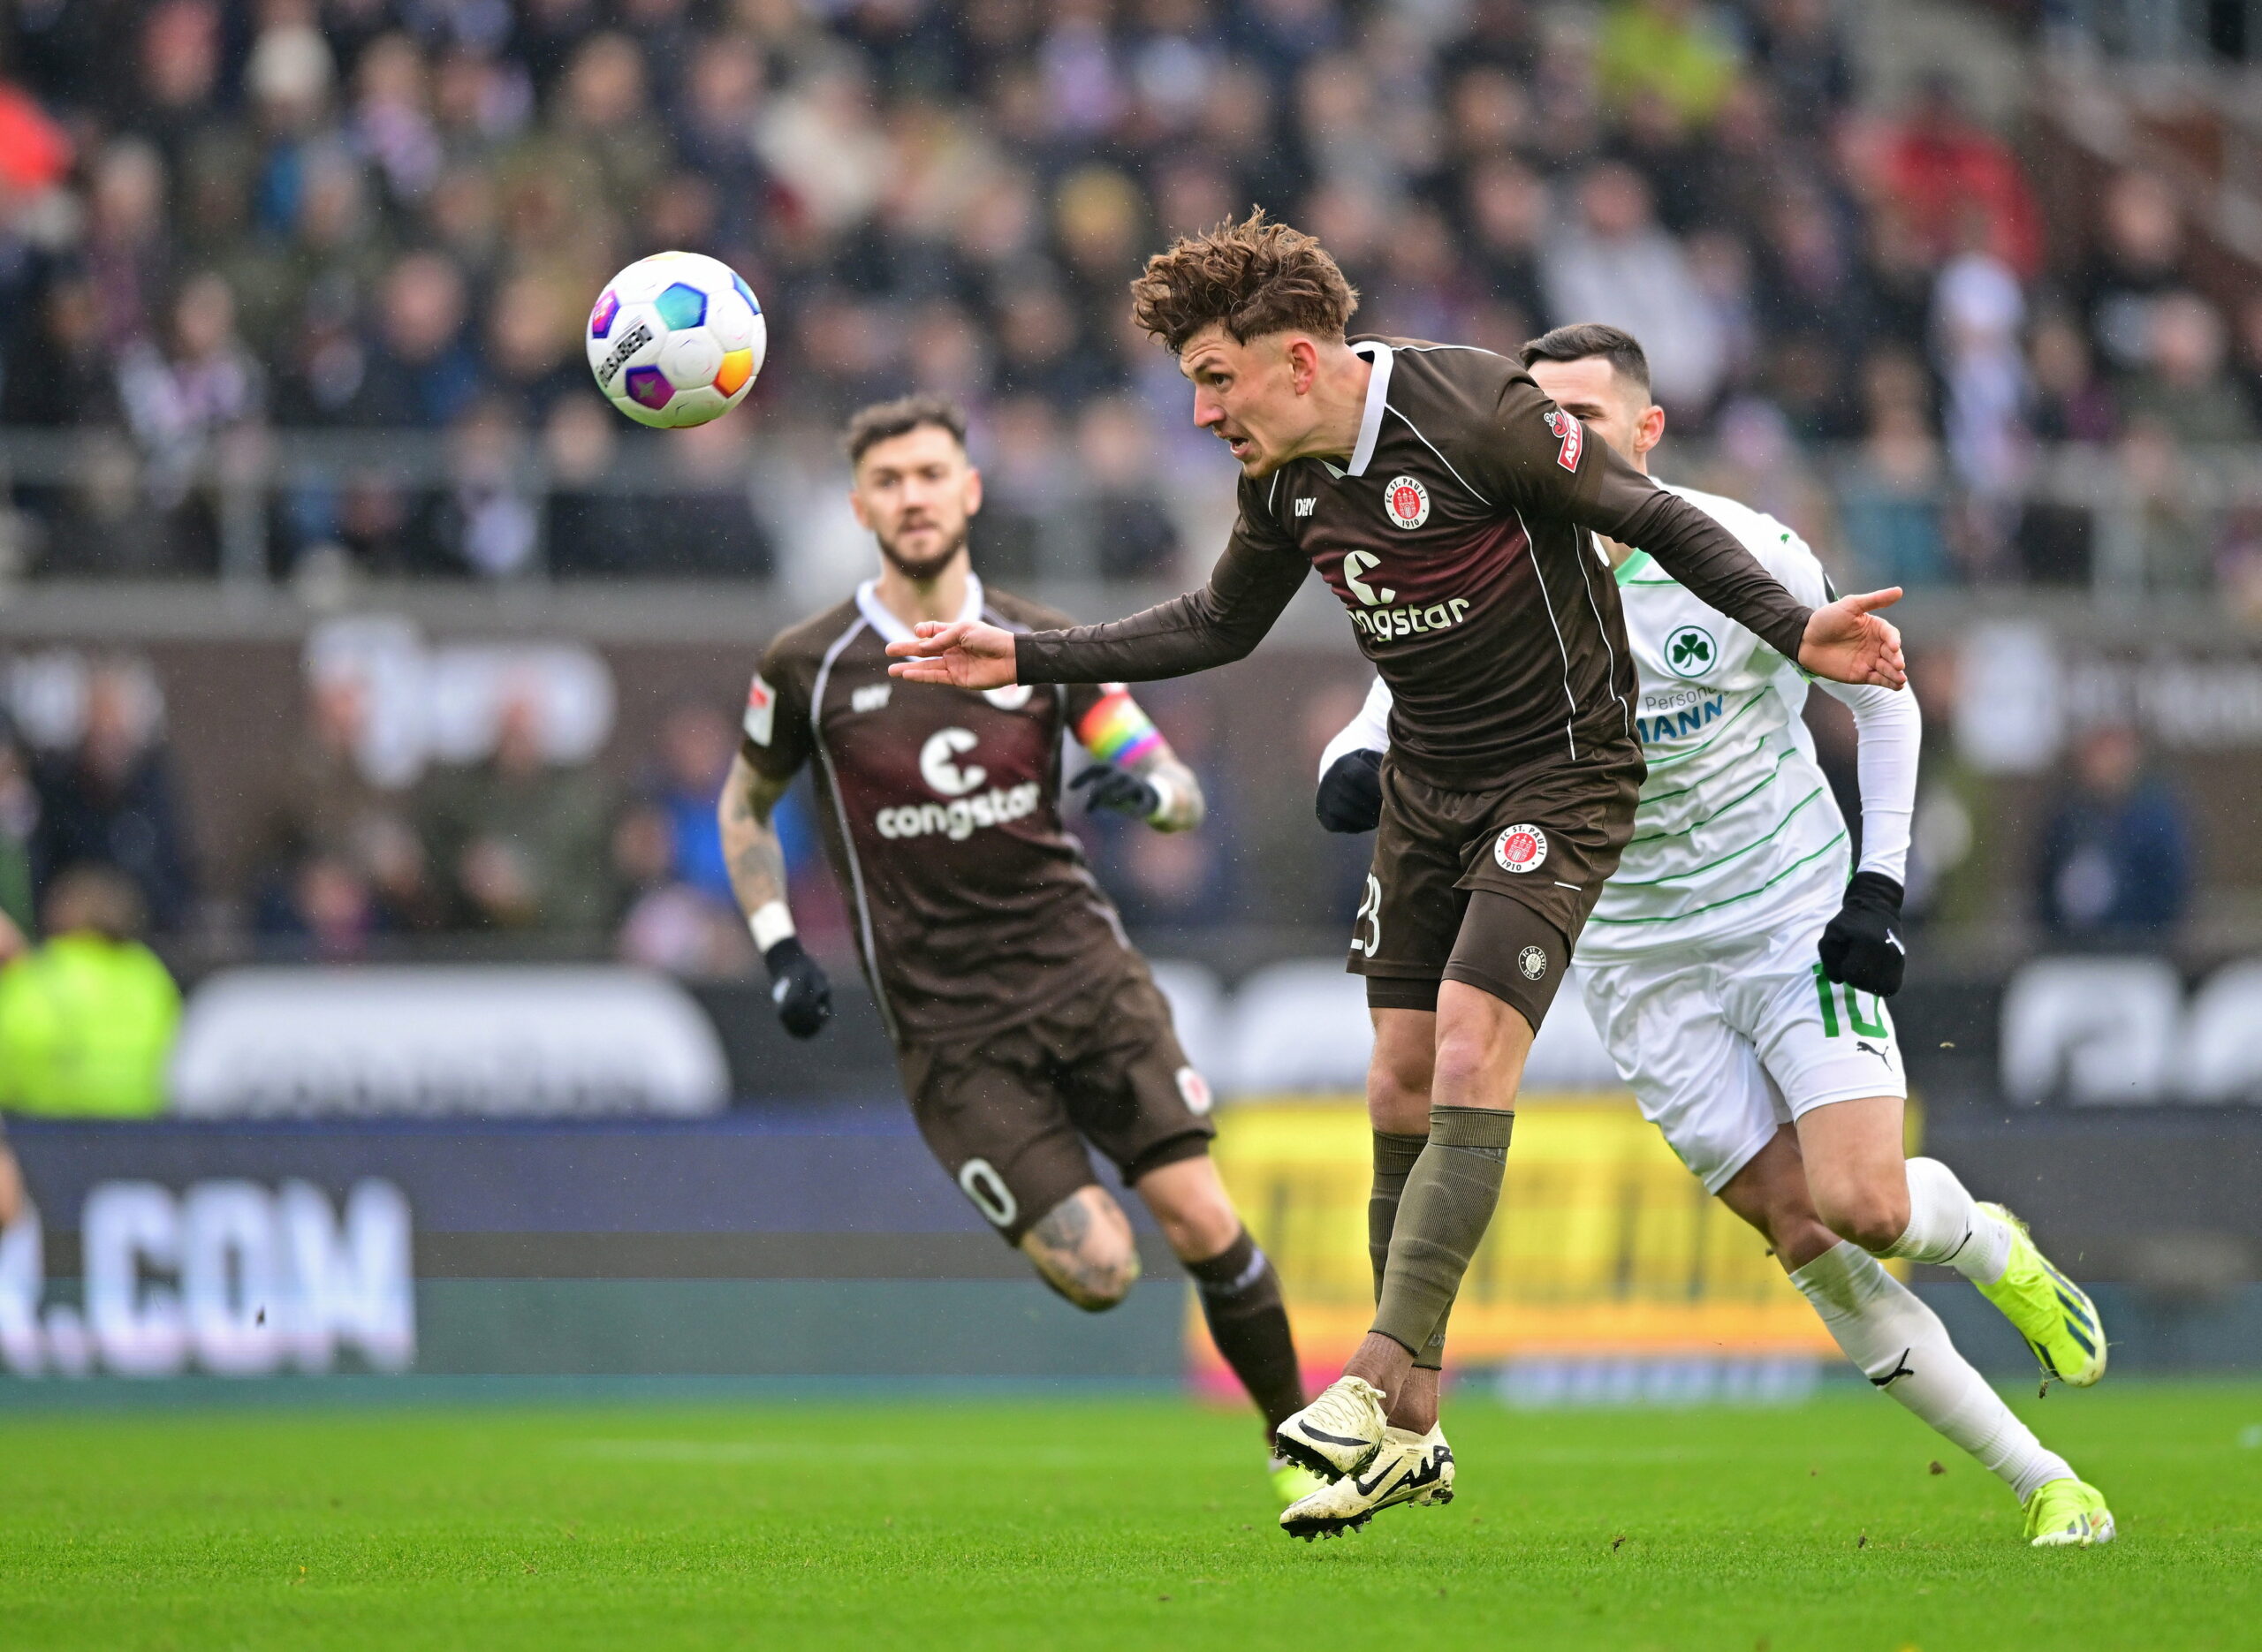 Immer mit vollem Einsatz: St. Paulis Philipp Treu beim Erfolg gegen Greuther Fürth.